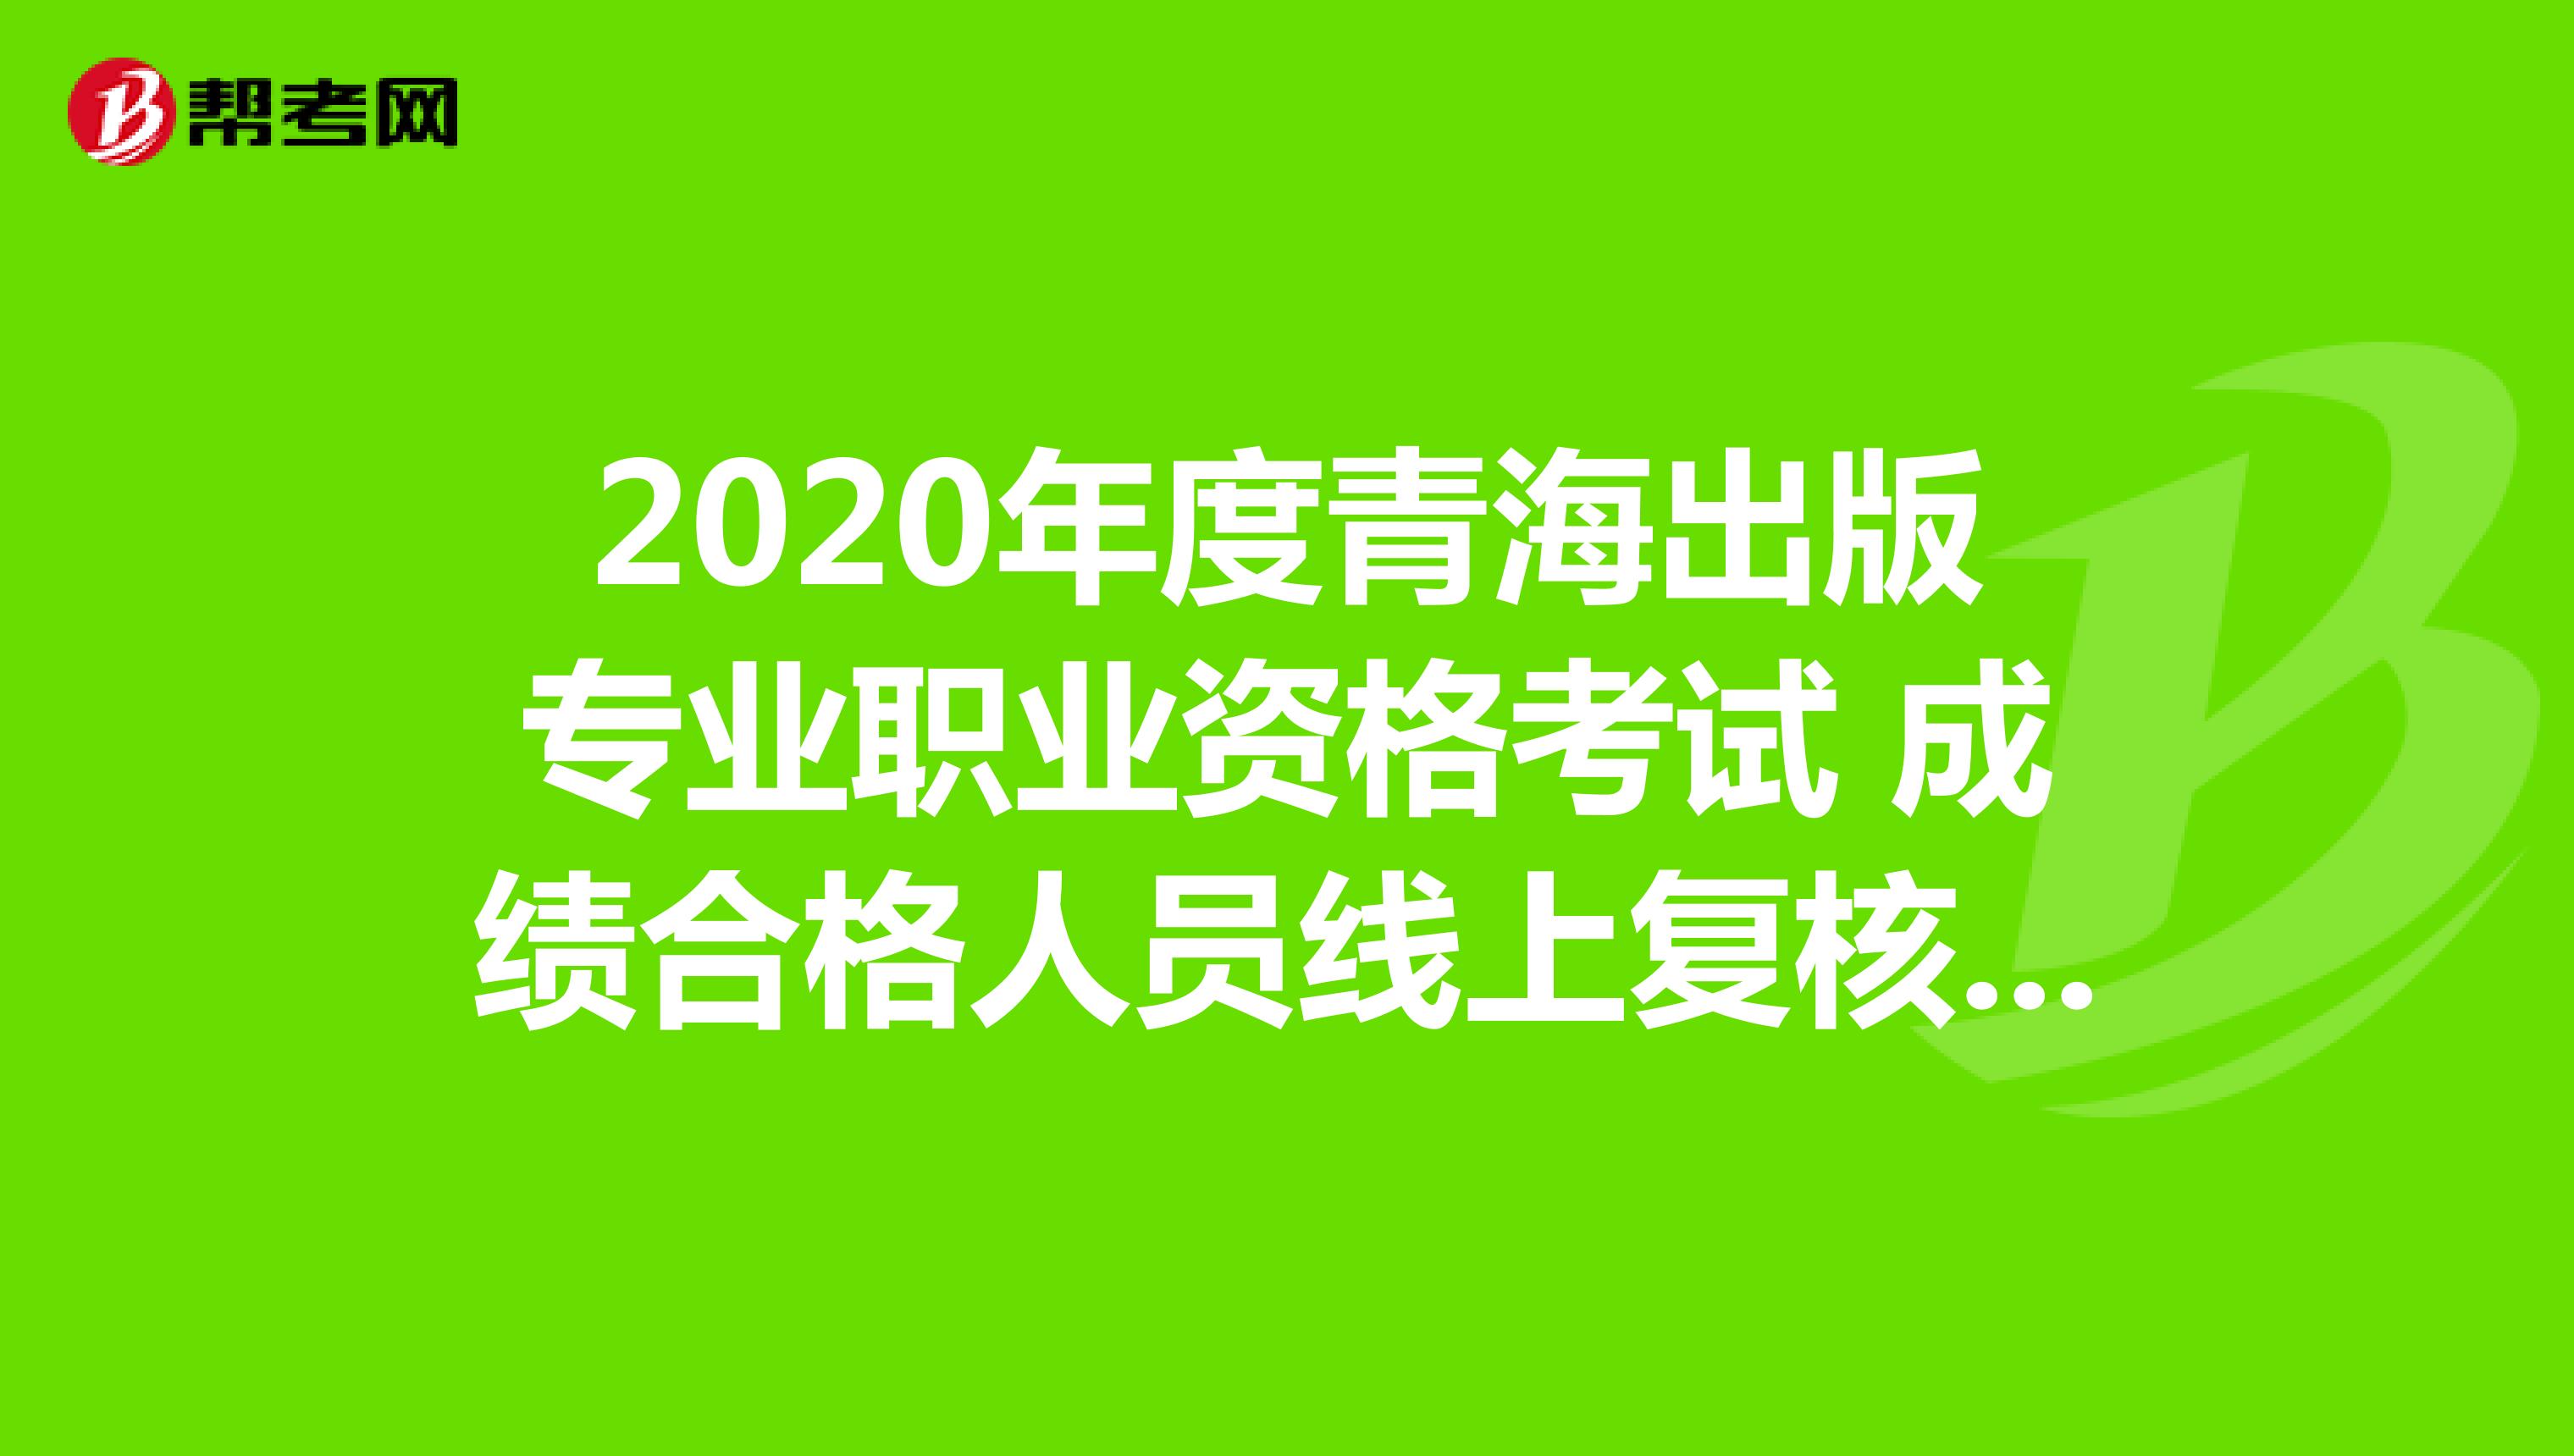 2020年度青海出版专业职业资格考试 成绩合格人员线上复核的通知